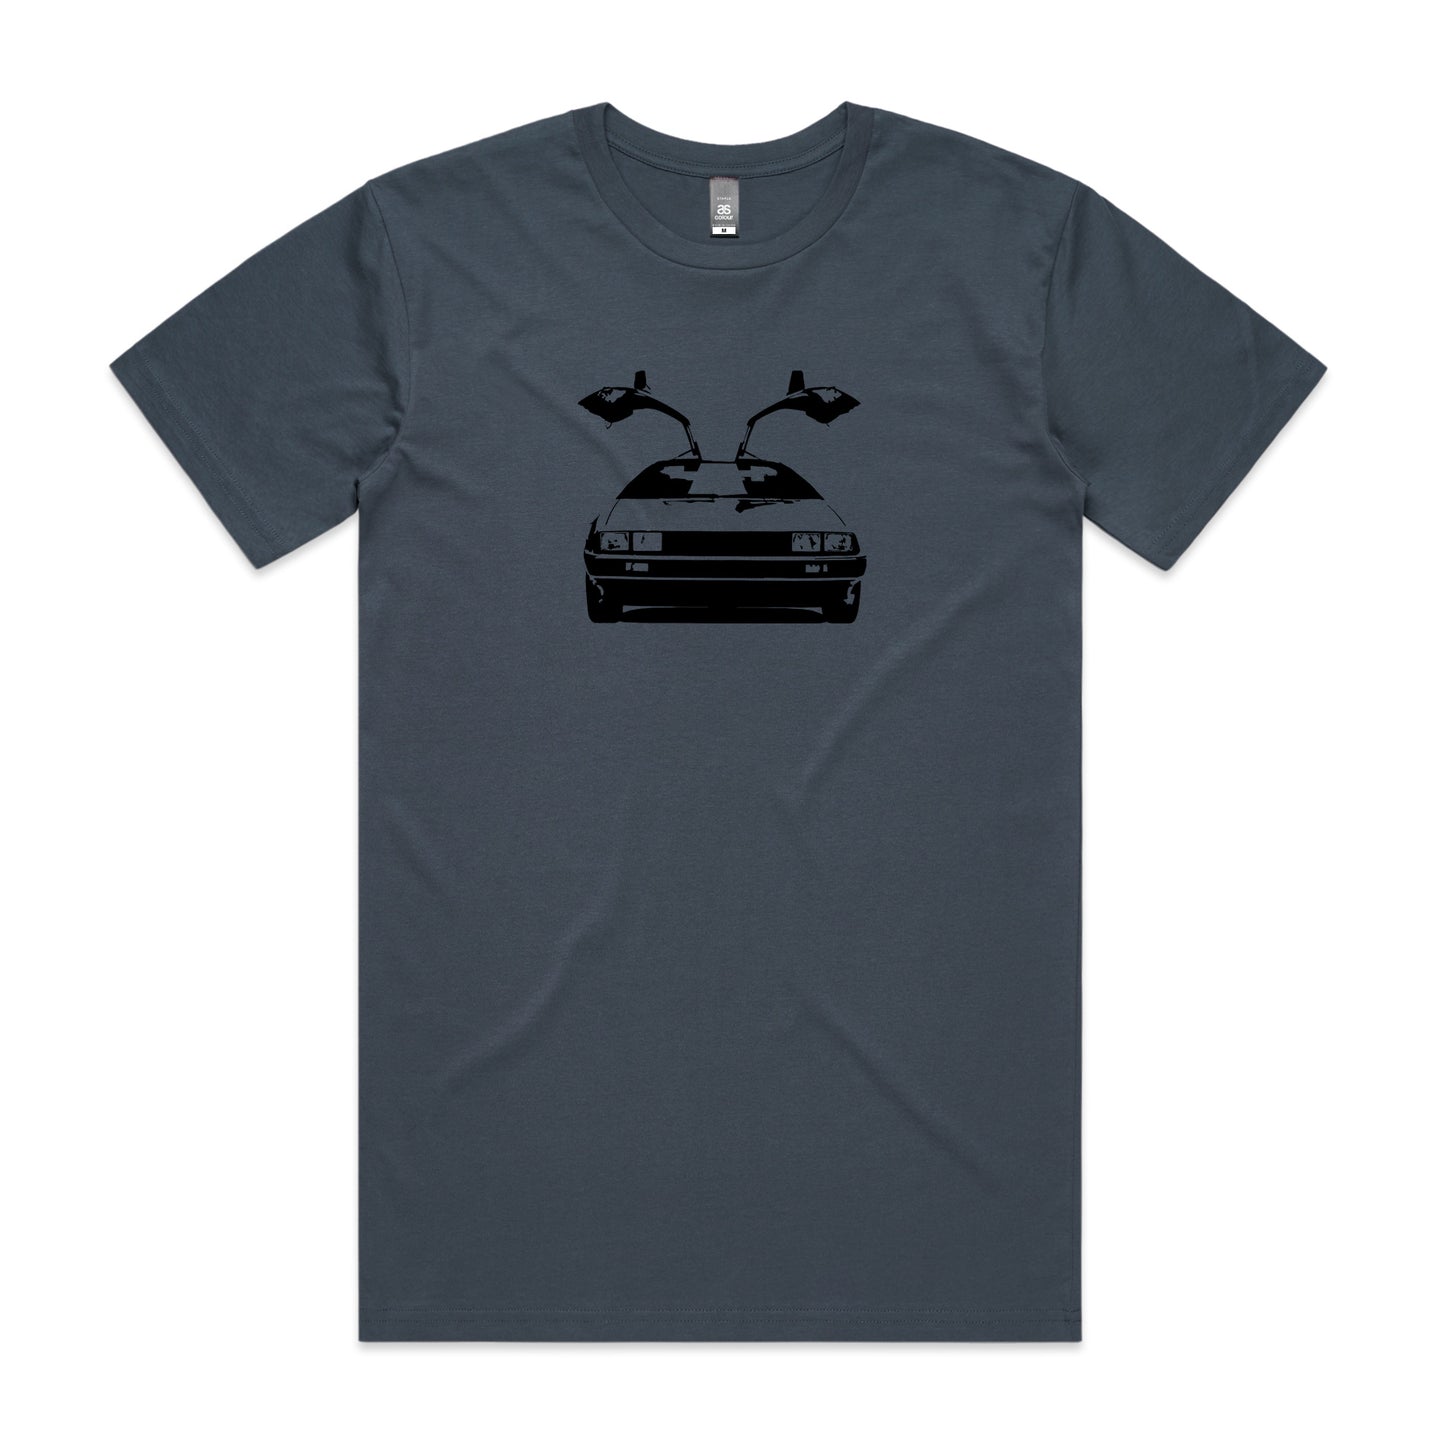 DeLorean DMC-12 T-Shirt